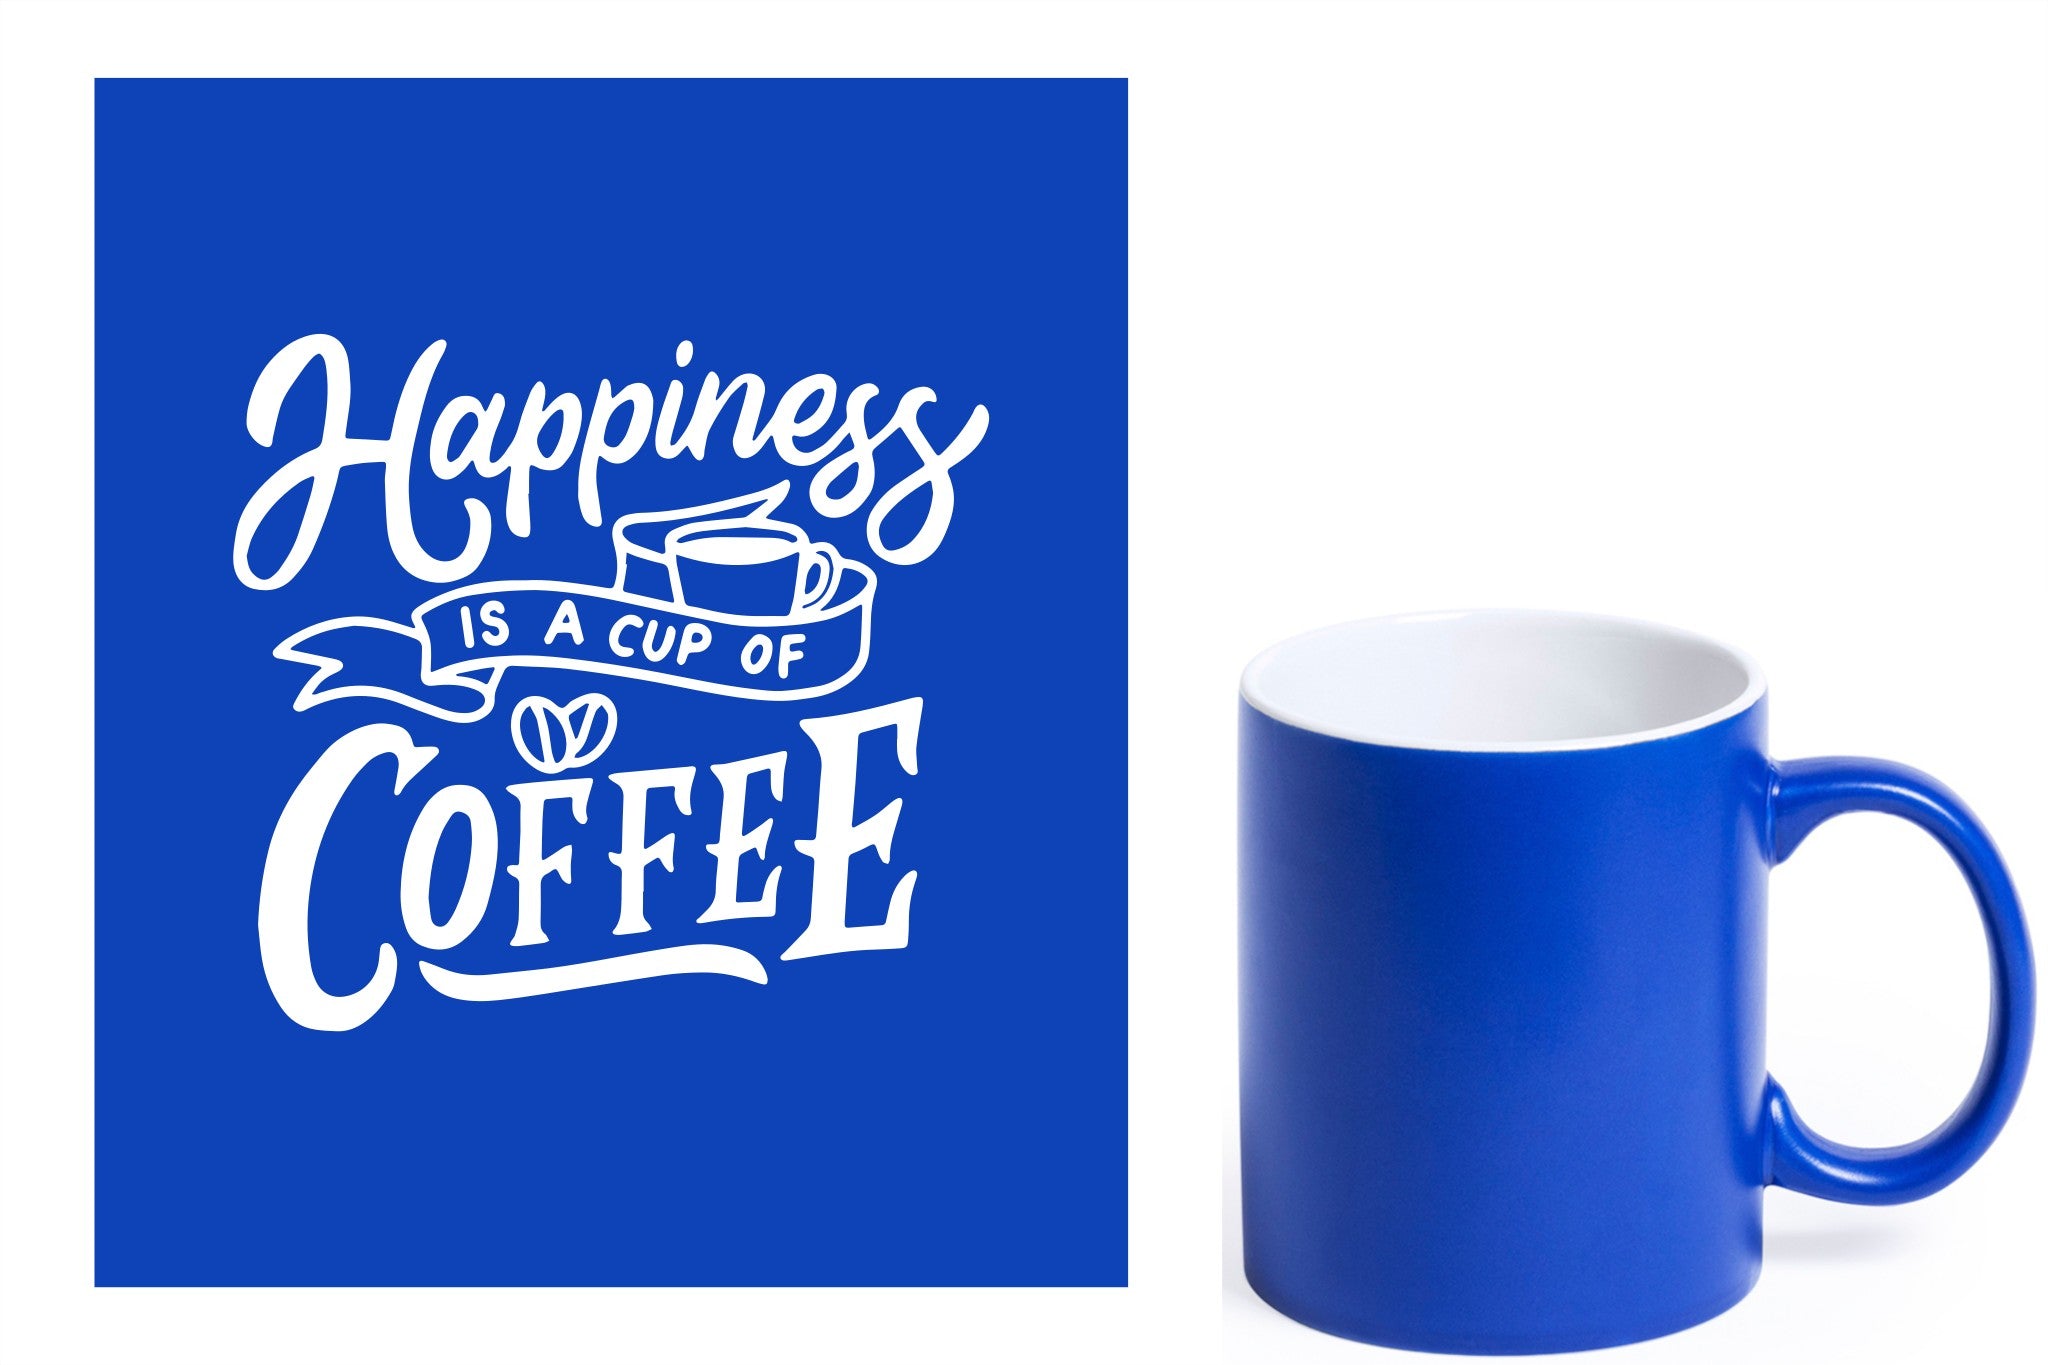 Blauwe keramische mok met witte gravure  'Happiness is a cup of coffee'.